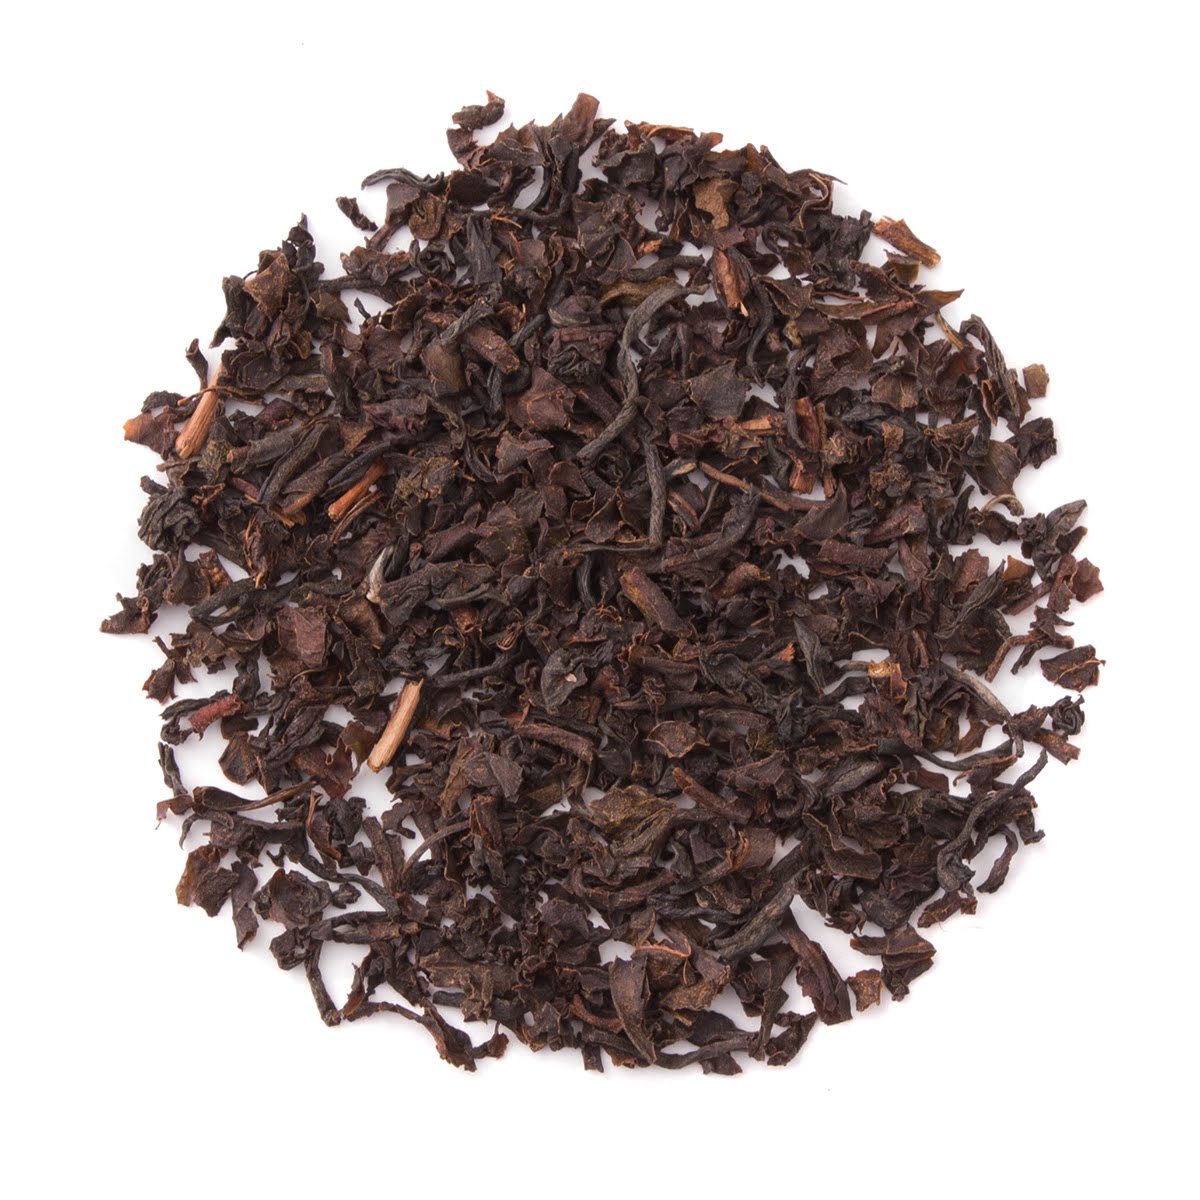 Organic English Breakfast - Bulk Loose Leaf Black Tea | Heavenly Tea Leaves